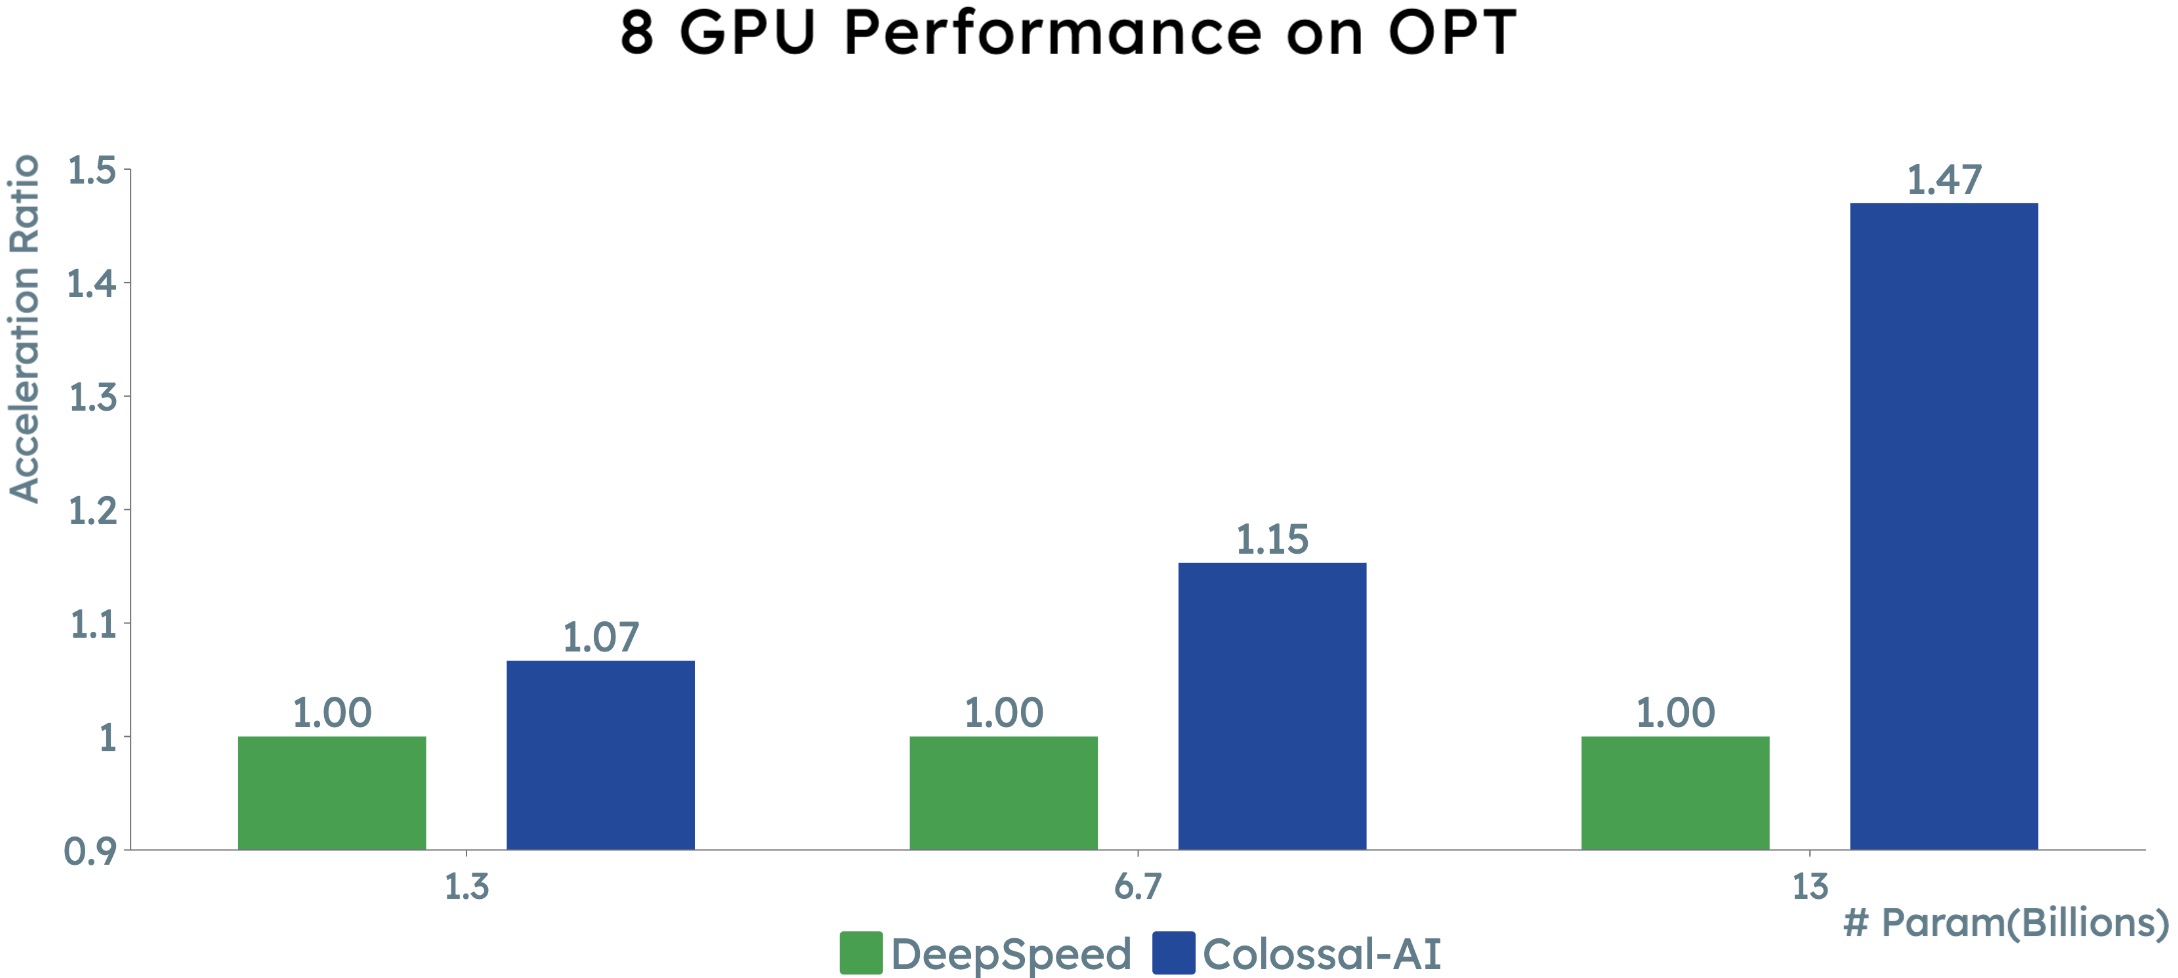 8 GPU Performance on OPT